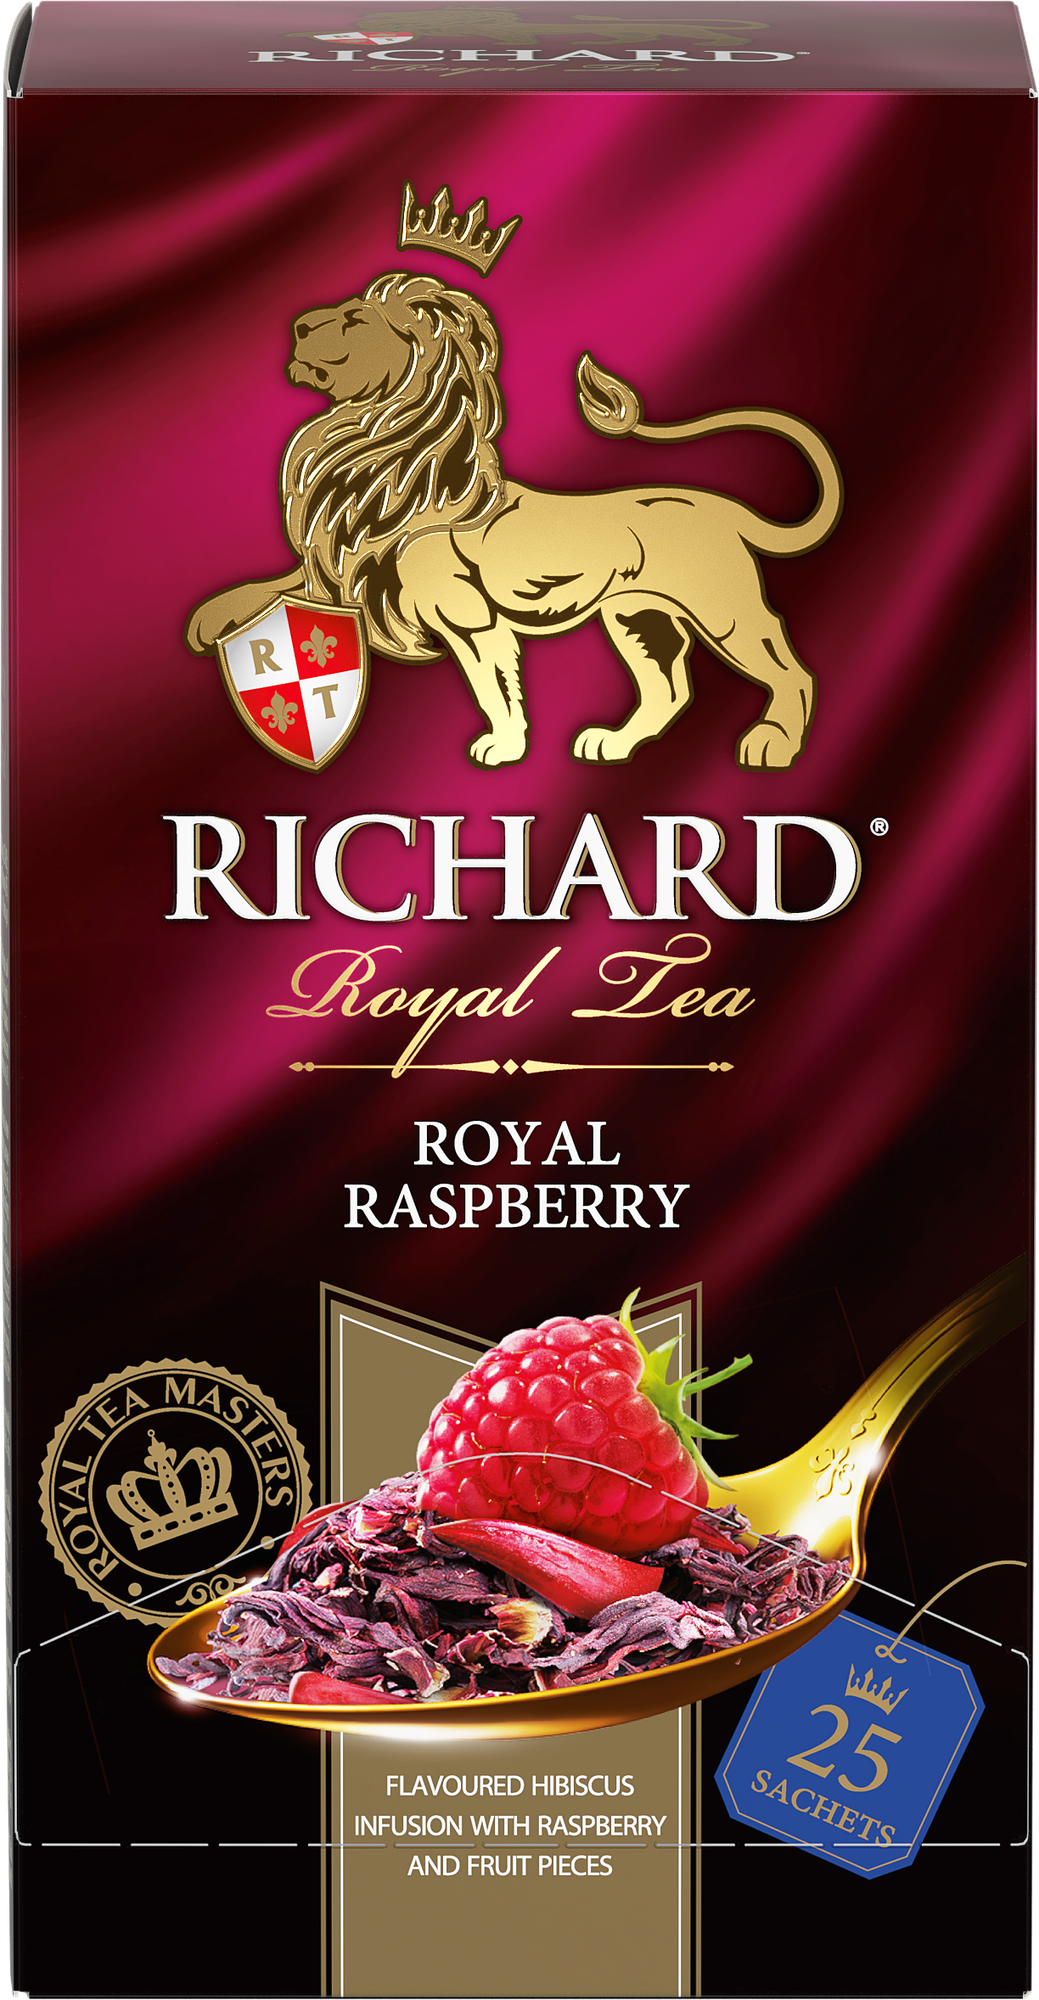 Чайный напиток красный Richard Royal raspberry в пакетиках